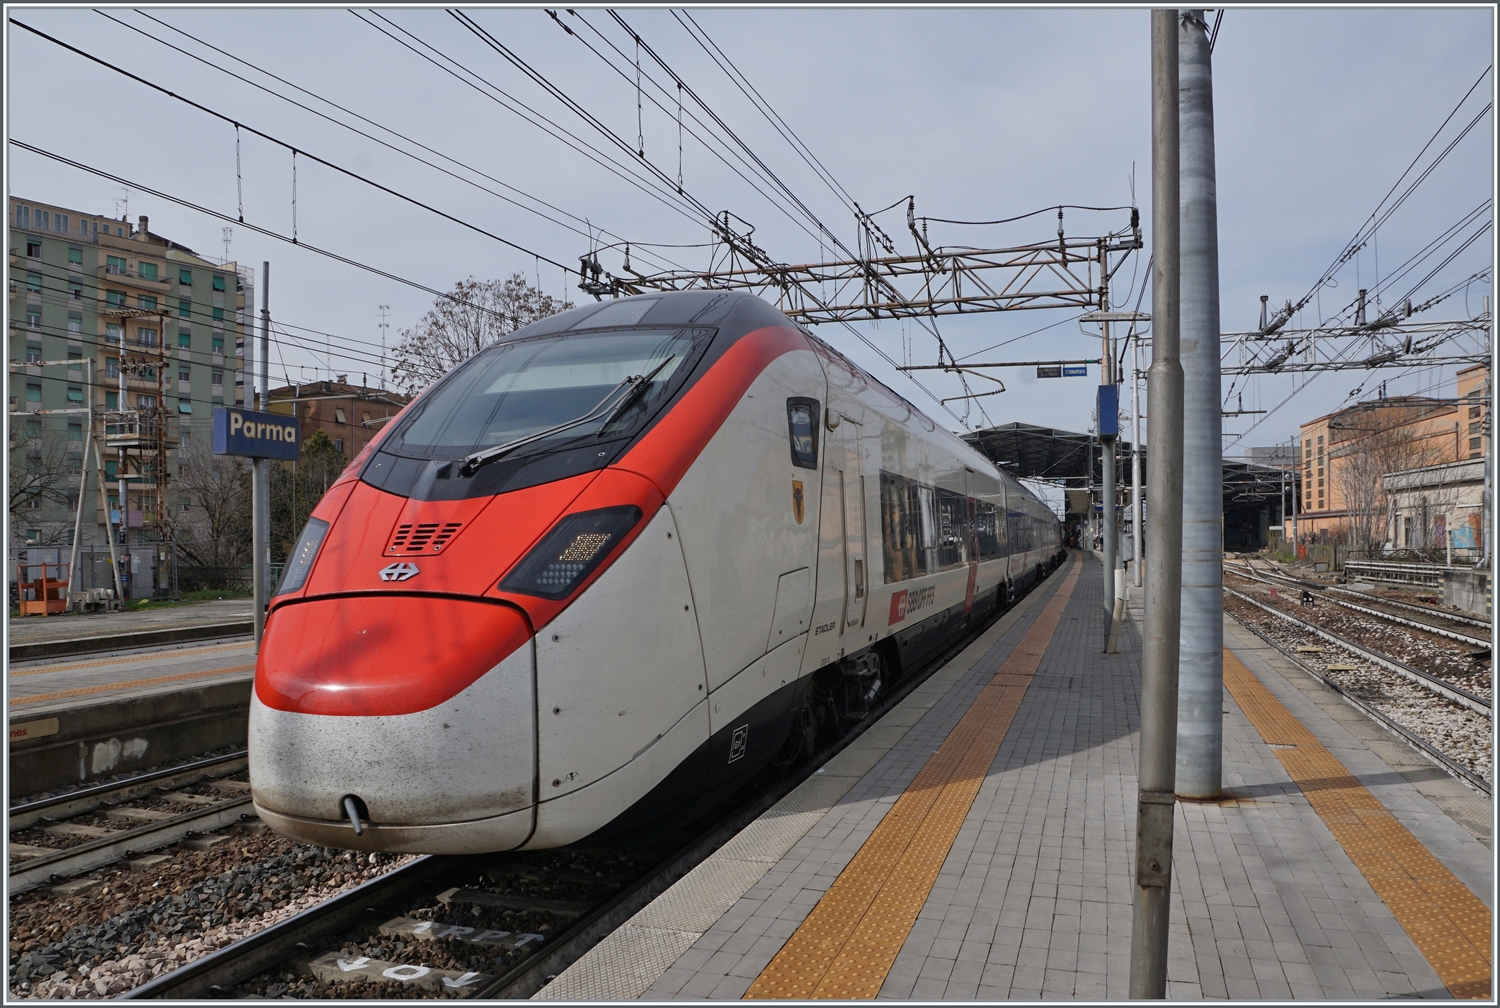 Der SBB Giruno RABe 501 007 URI  ist als EC 307 von Zürich nach Bologna unterwegs verlässt Parma. 

13. März 2023